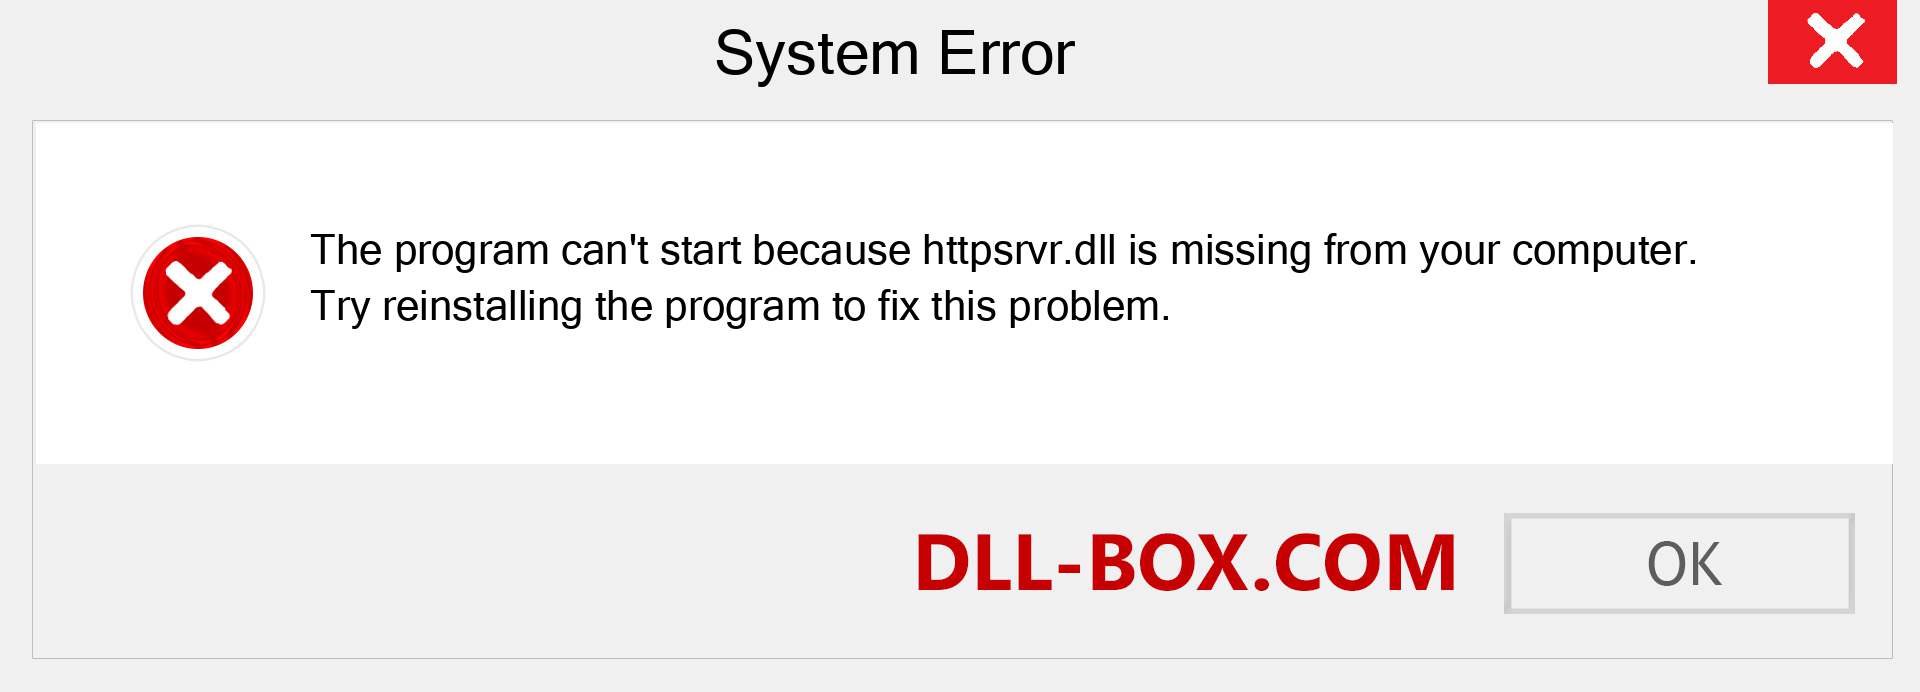  httpsrvr.dll file is missing?. Download for Windows 7, 8, 10 - Fix  httpsrvr dll Missing Error on Windows, photos, images